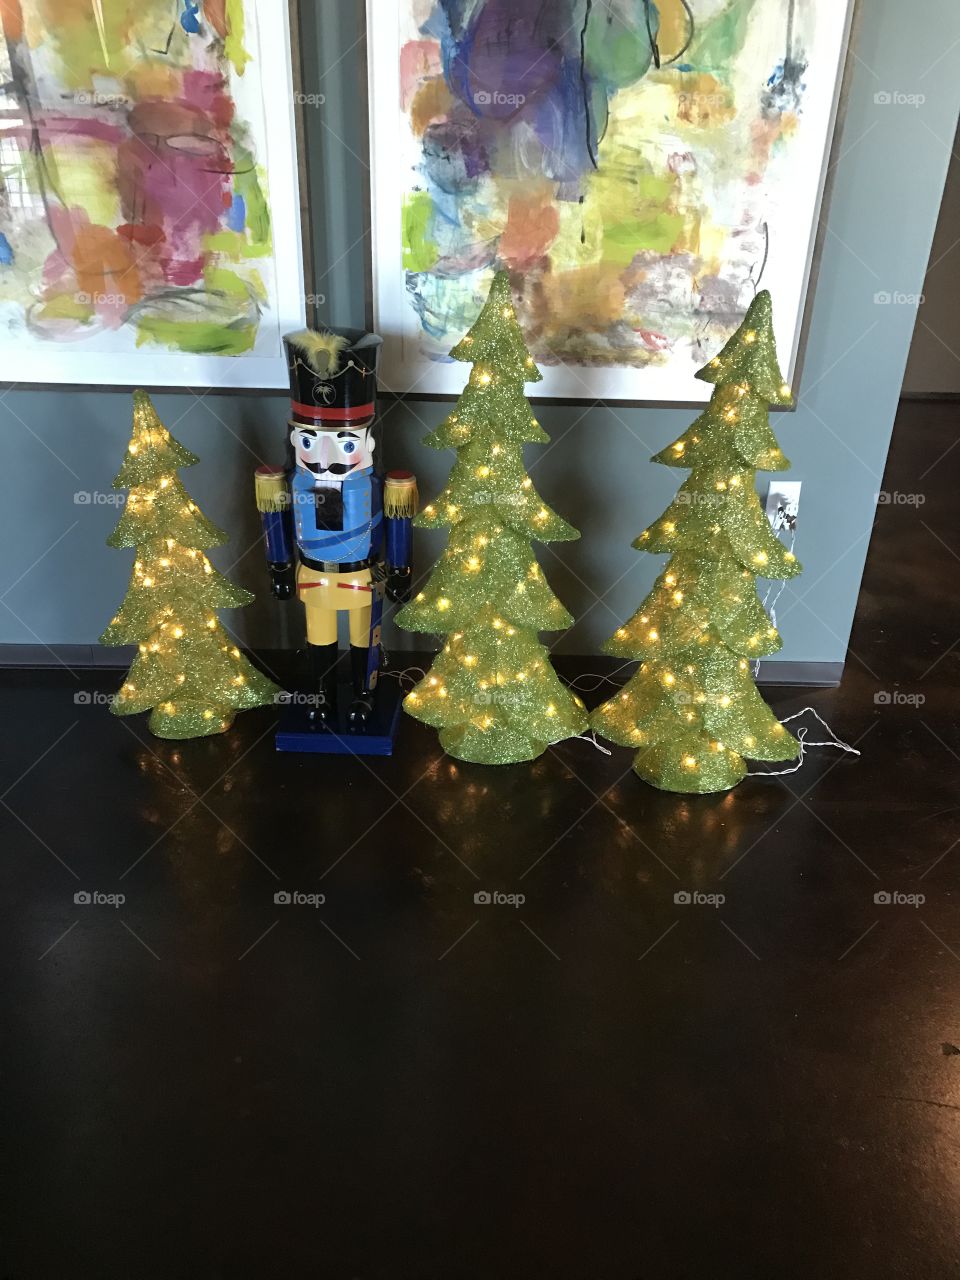 Three Christmas trees & Nutcracker 